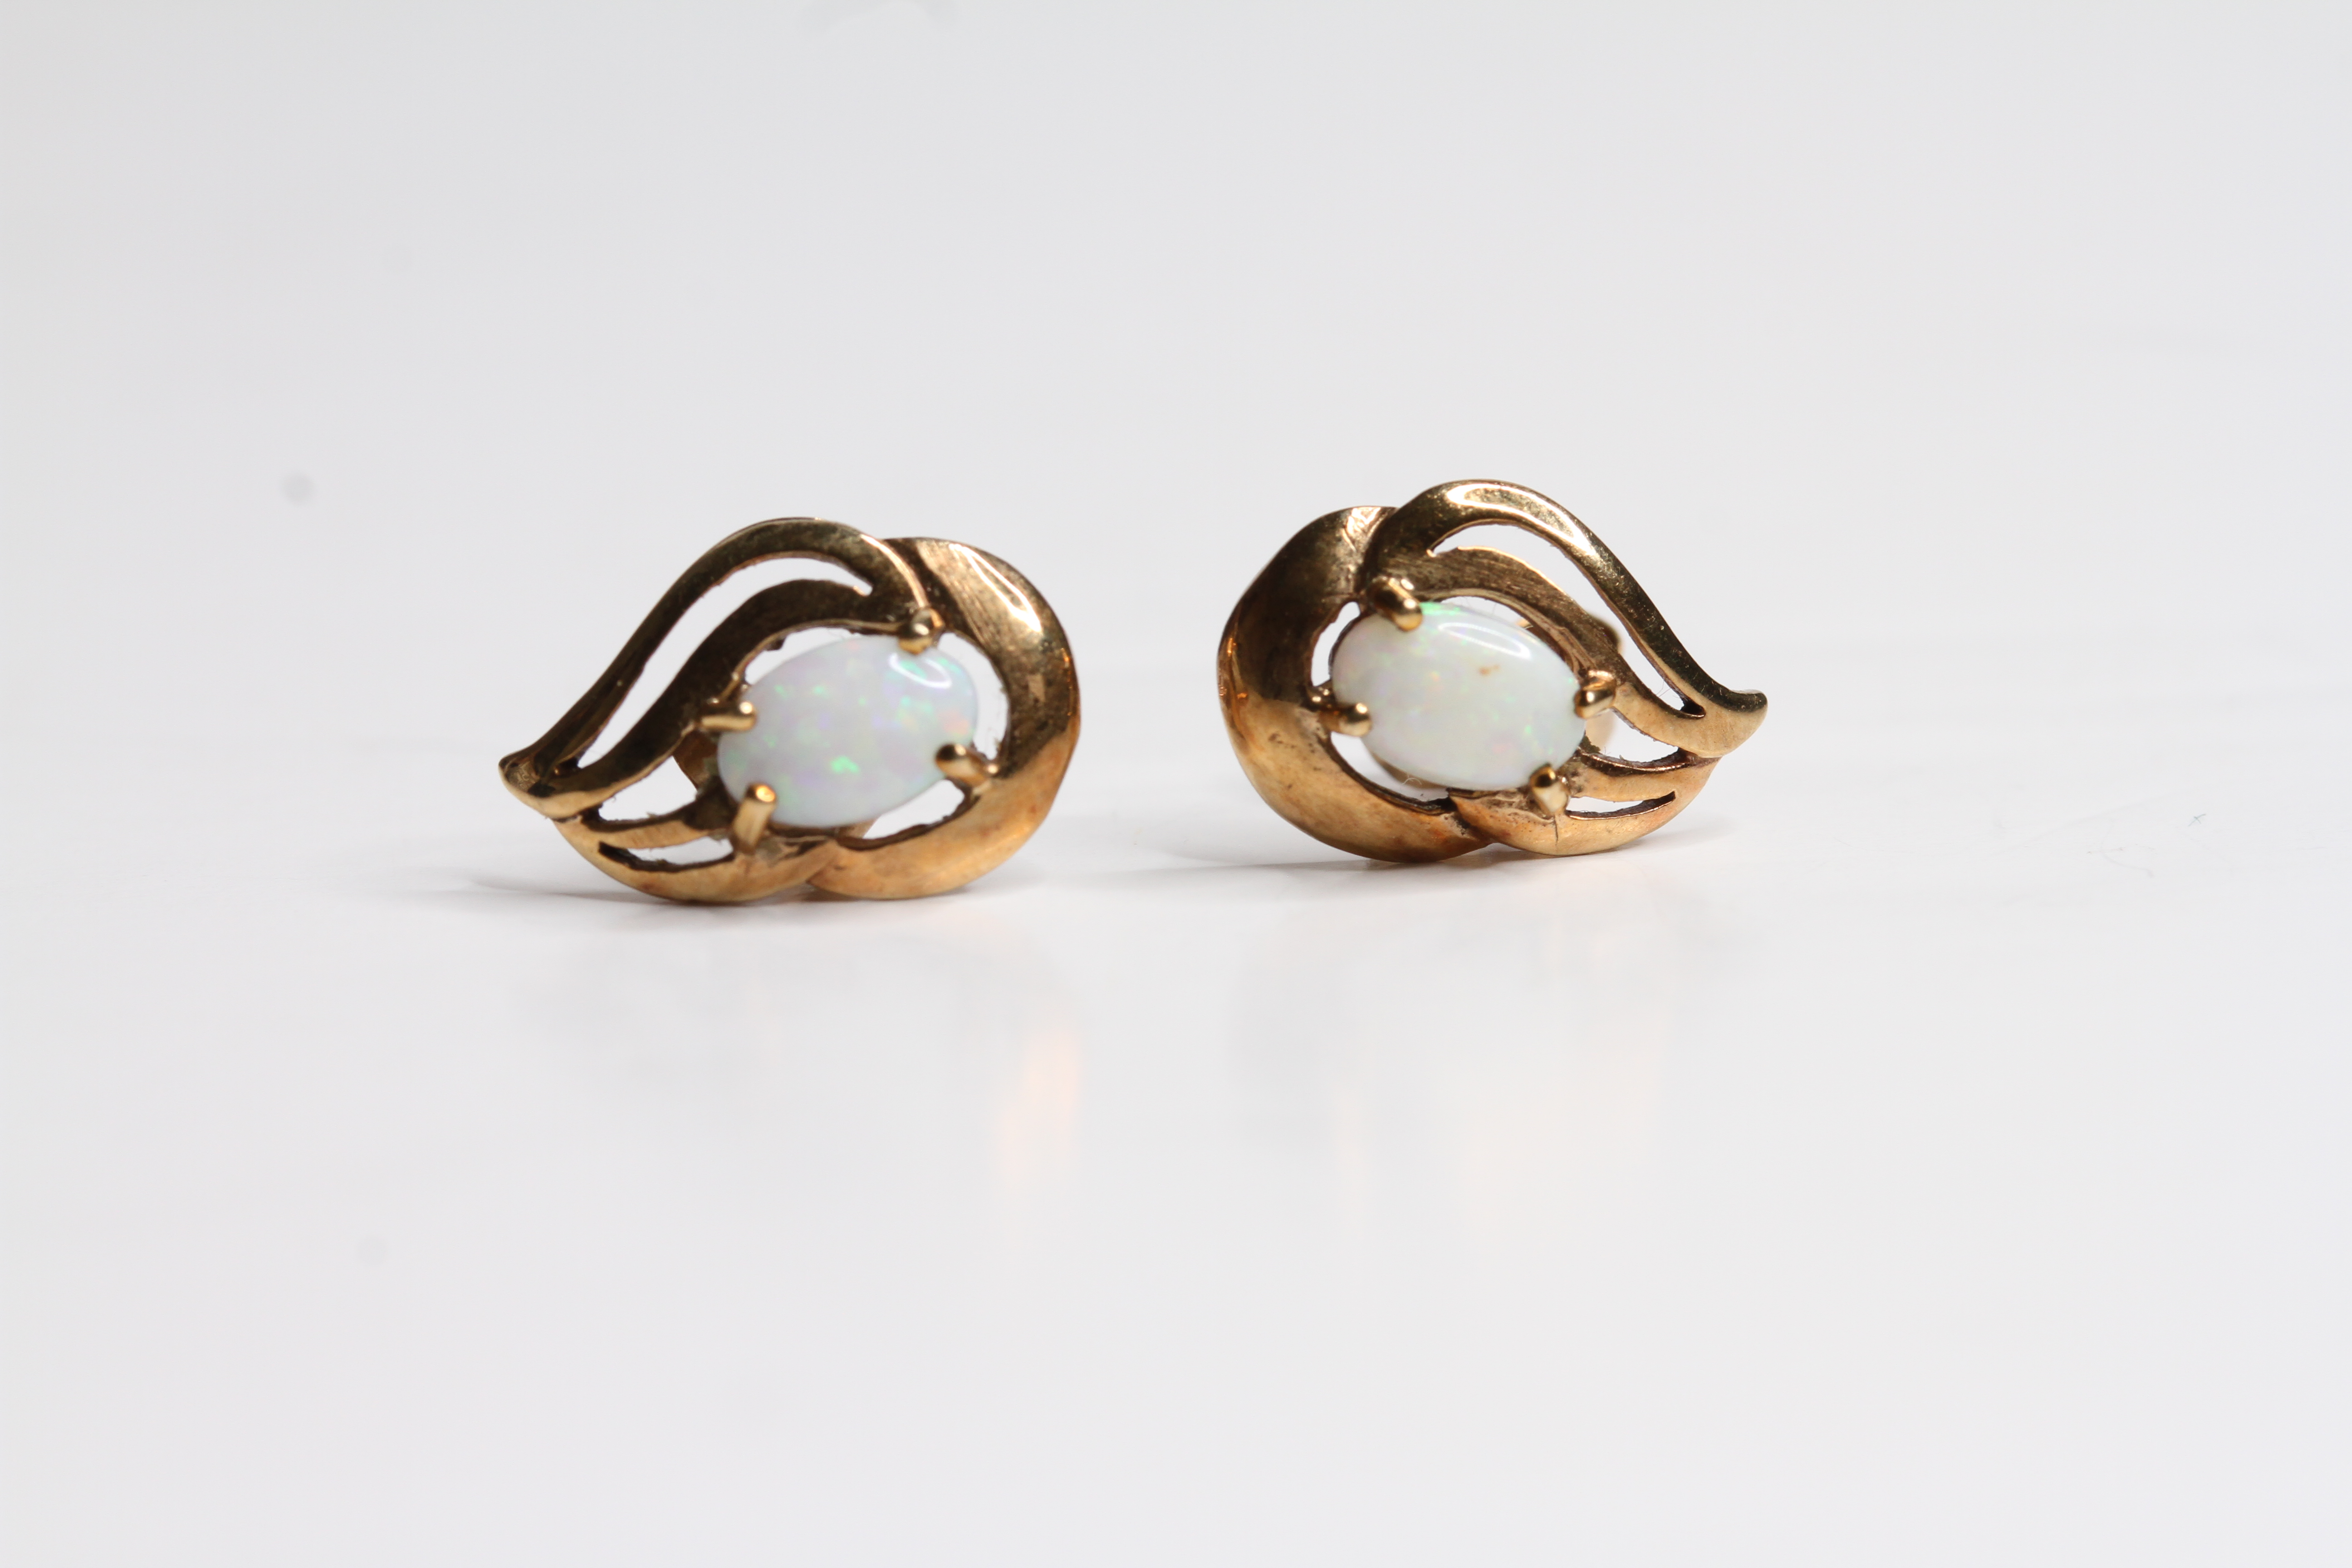 9ct Gold vintage opal cut work stud earrings (1.4g) - Image 2 of 3